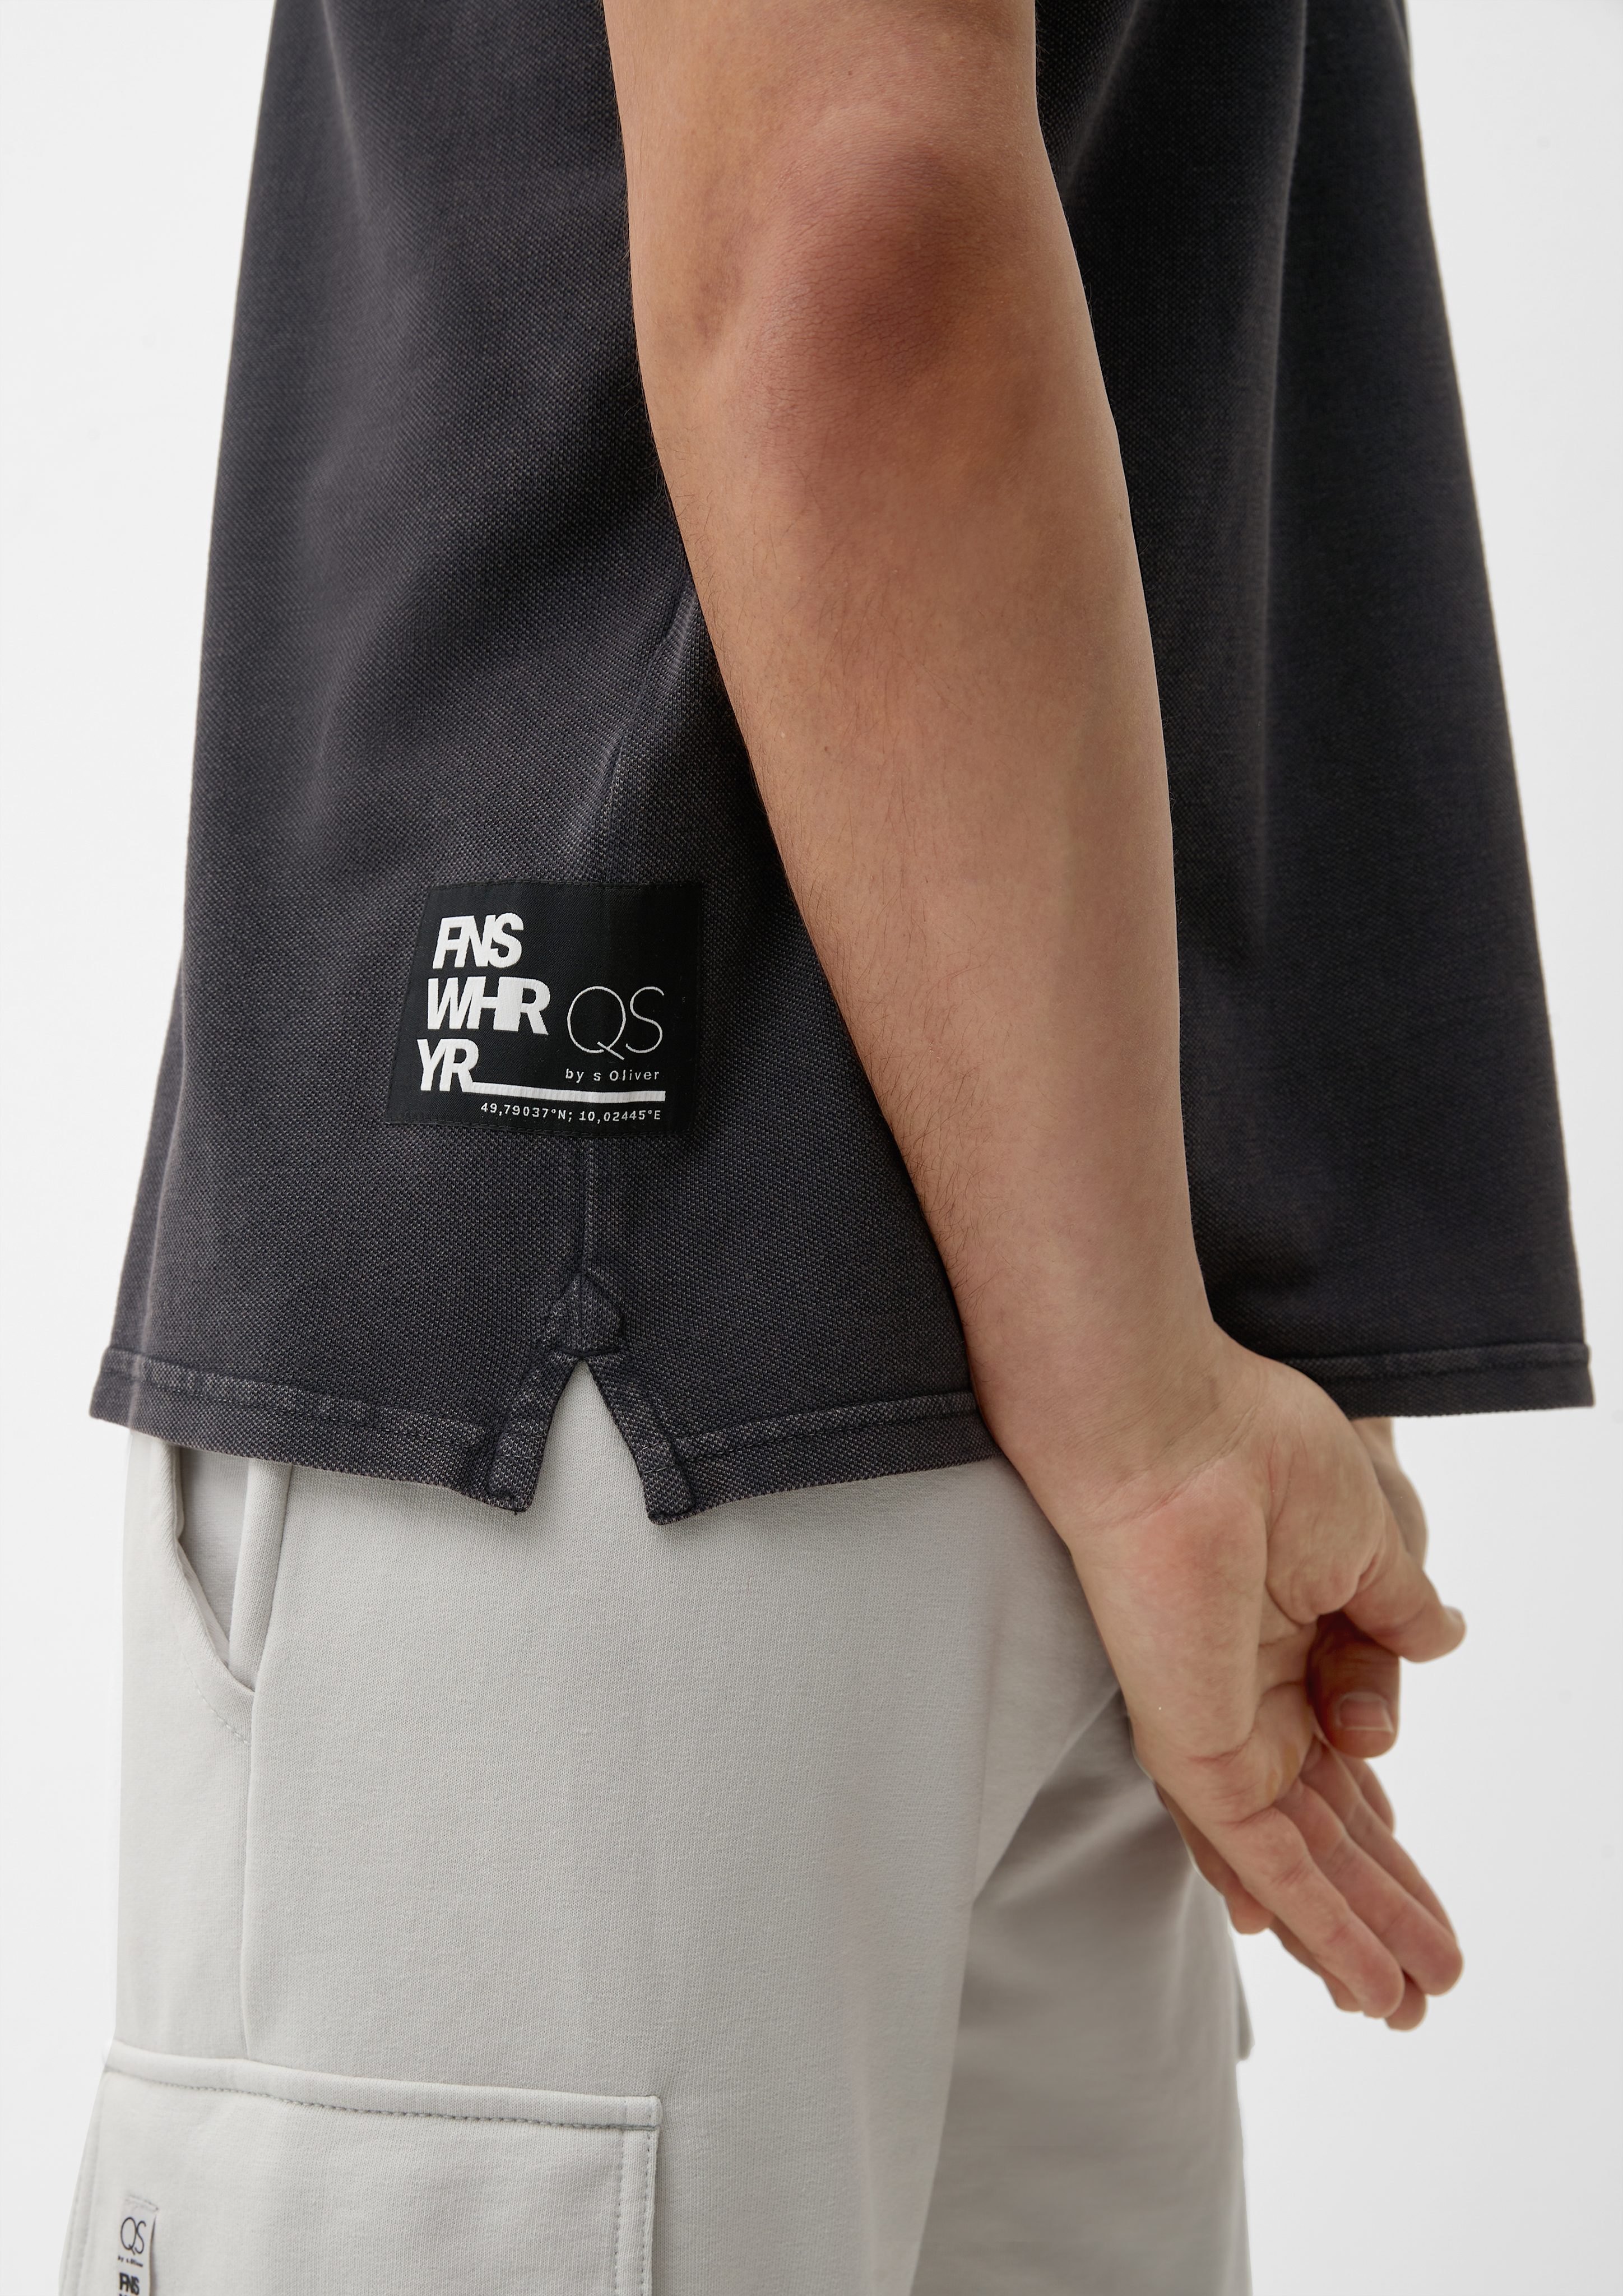 Stickerei, Kurzarmshirt QS Applikation, Poloshirt dunkelgrau Baumwoll-Piqué aus Waschung